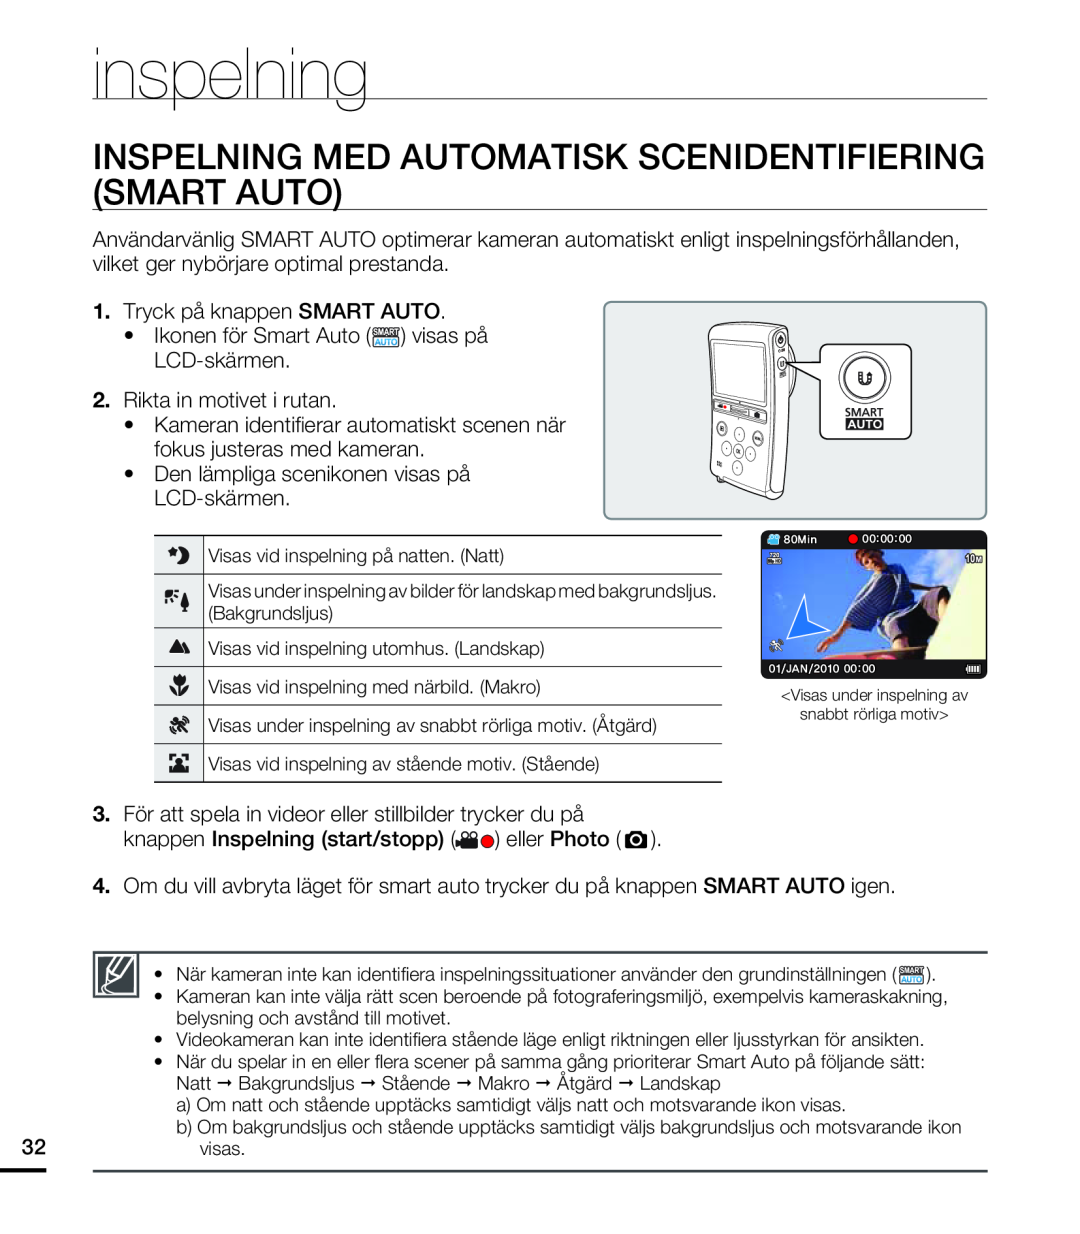 Samsung HMX-U20BP/EDC manual Inspelning Med Automatisk Scenidentifiering Smart Auto, inspelning 